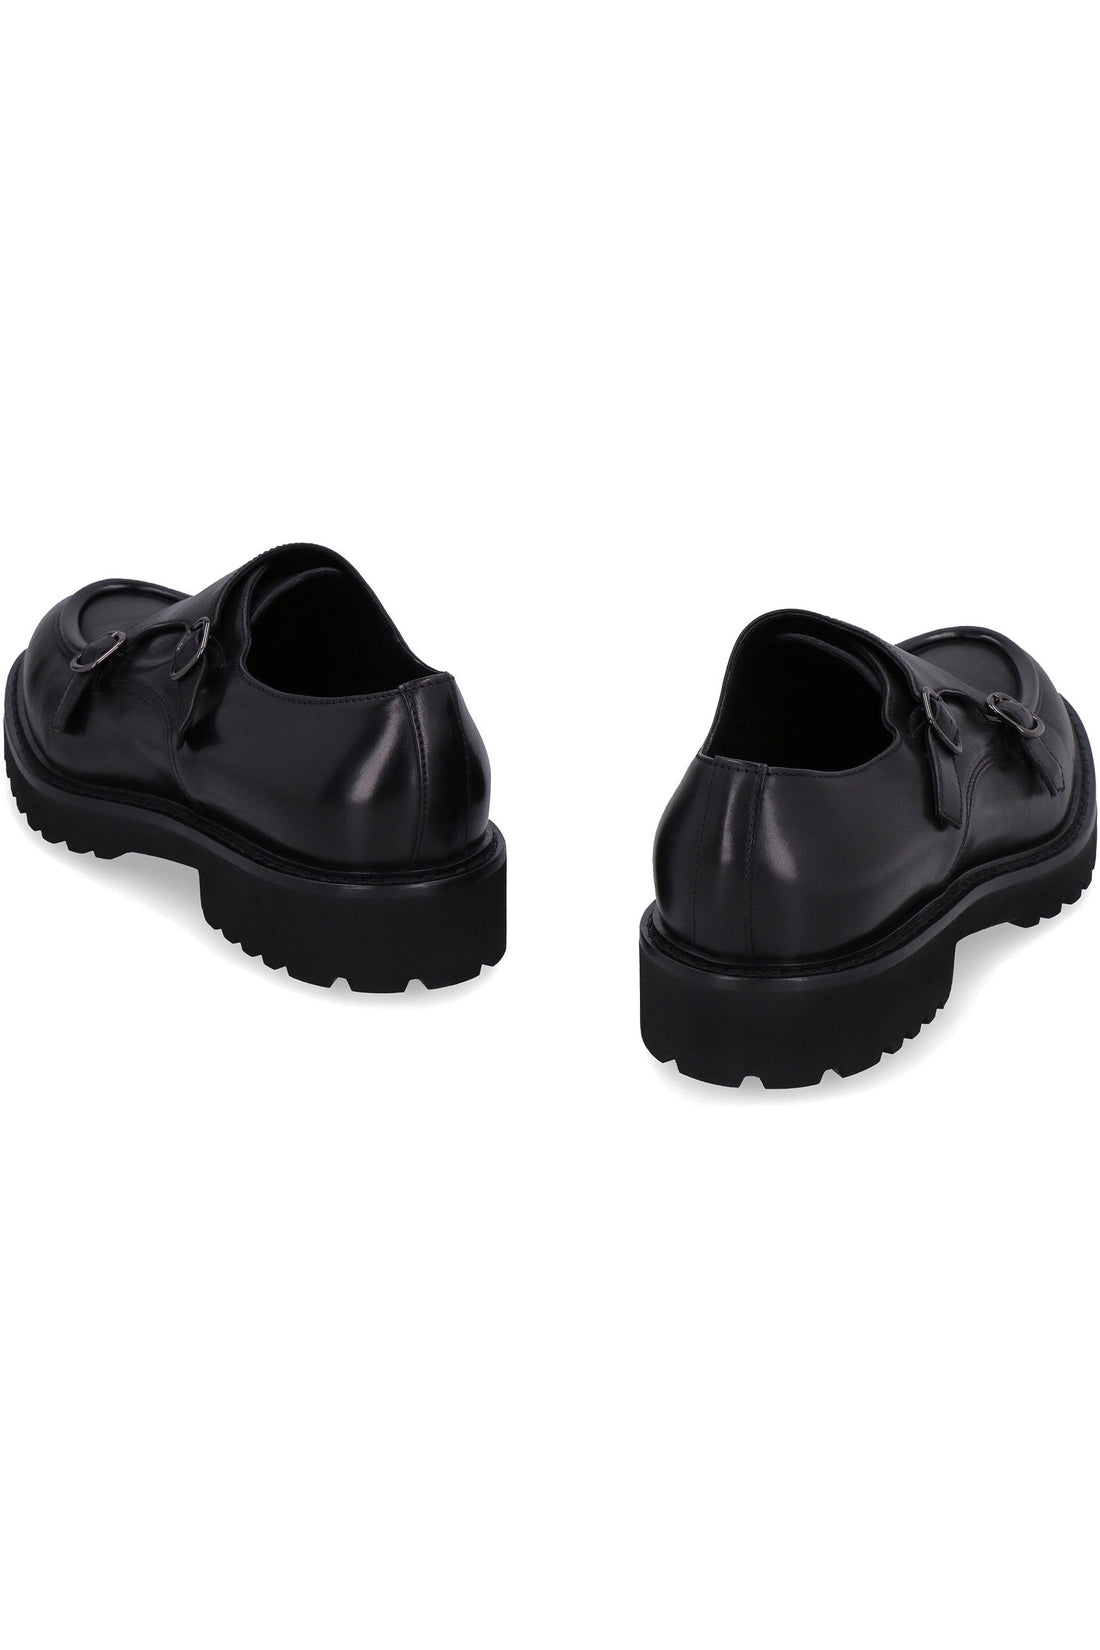 Doucal's-OUTLET-SALE-Leather monk-strap shoes-ARCHIVIST